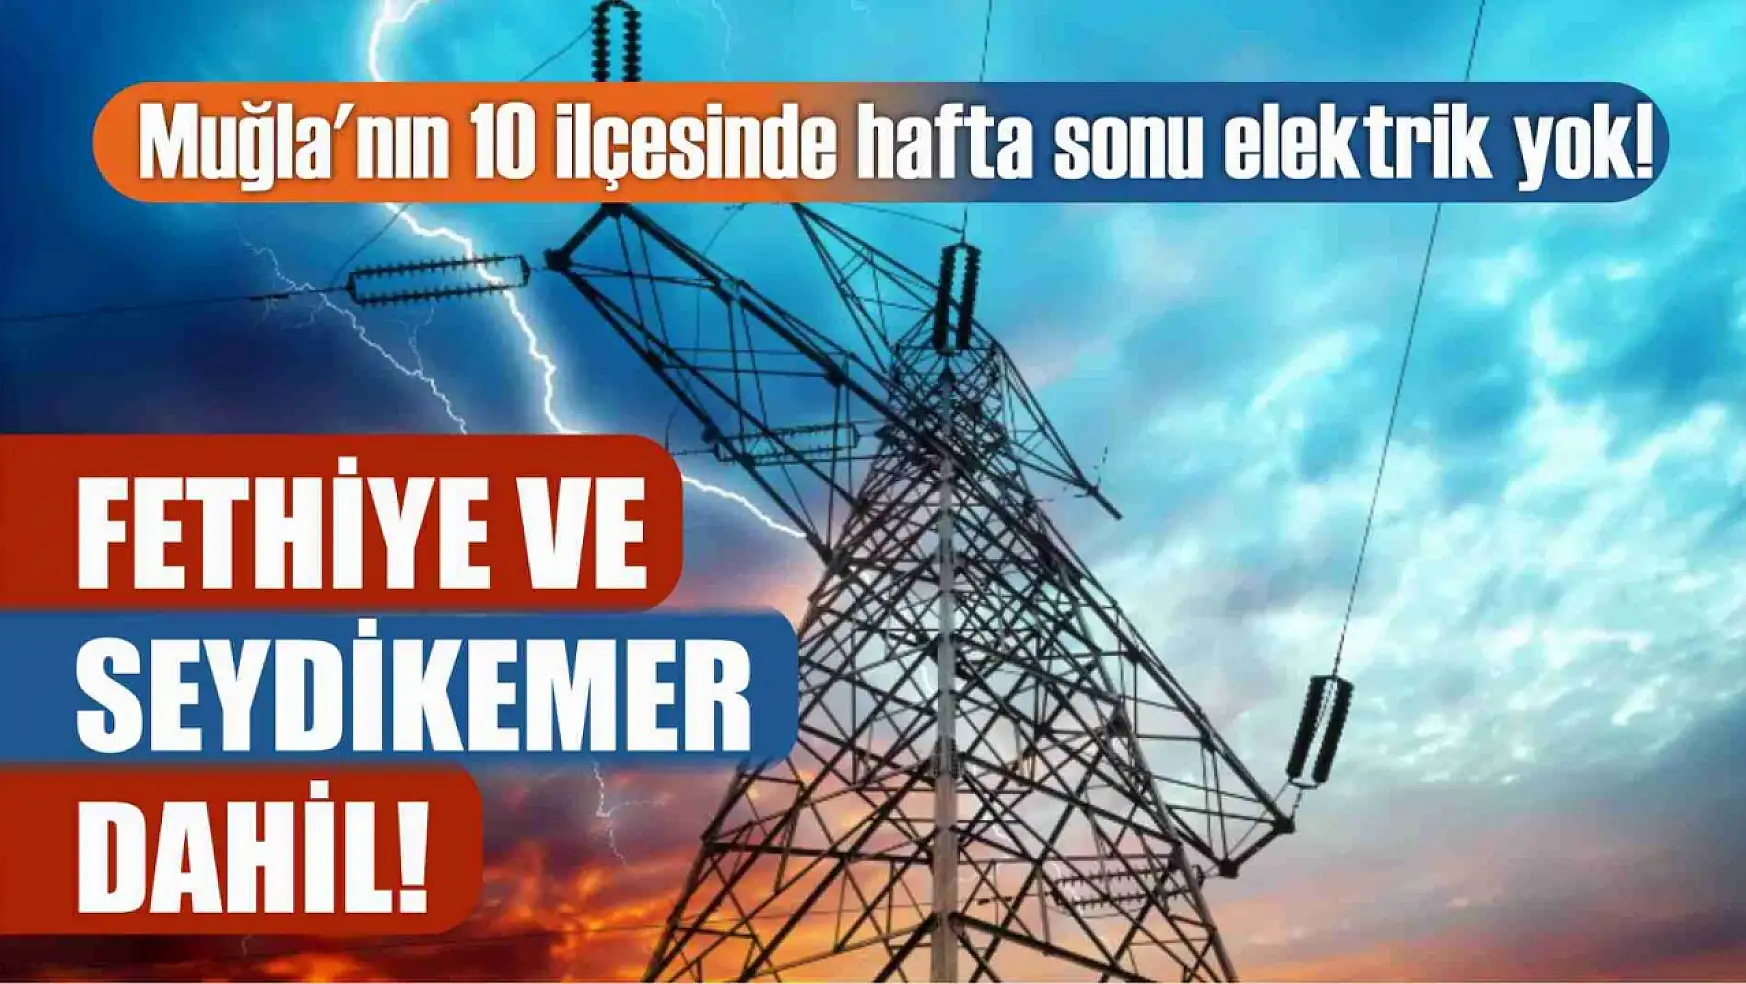 Muğla'nın 10 ilçesinde hafta sonu elektrik yok! Fethiye ve Seydikemer dahil! 9-10 Mart elektrik kesintisi detaylar..